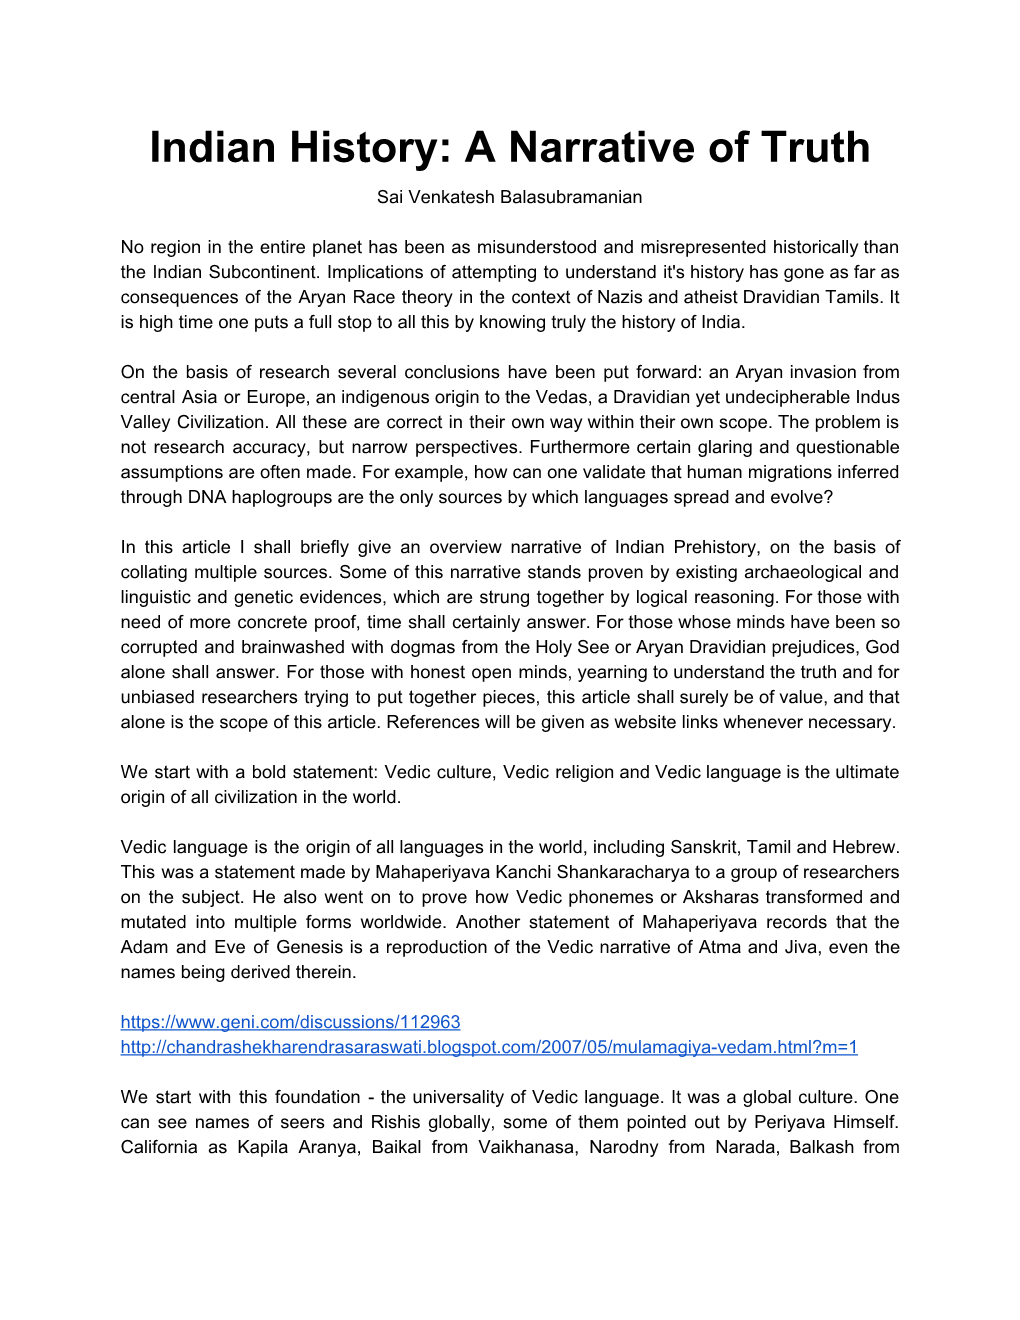 Indian History: a Narrative of Truth Sai Venkatesh Balasubramanian